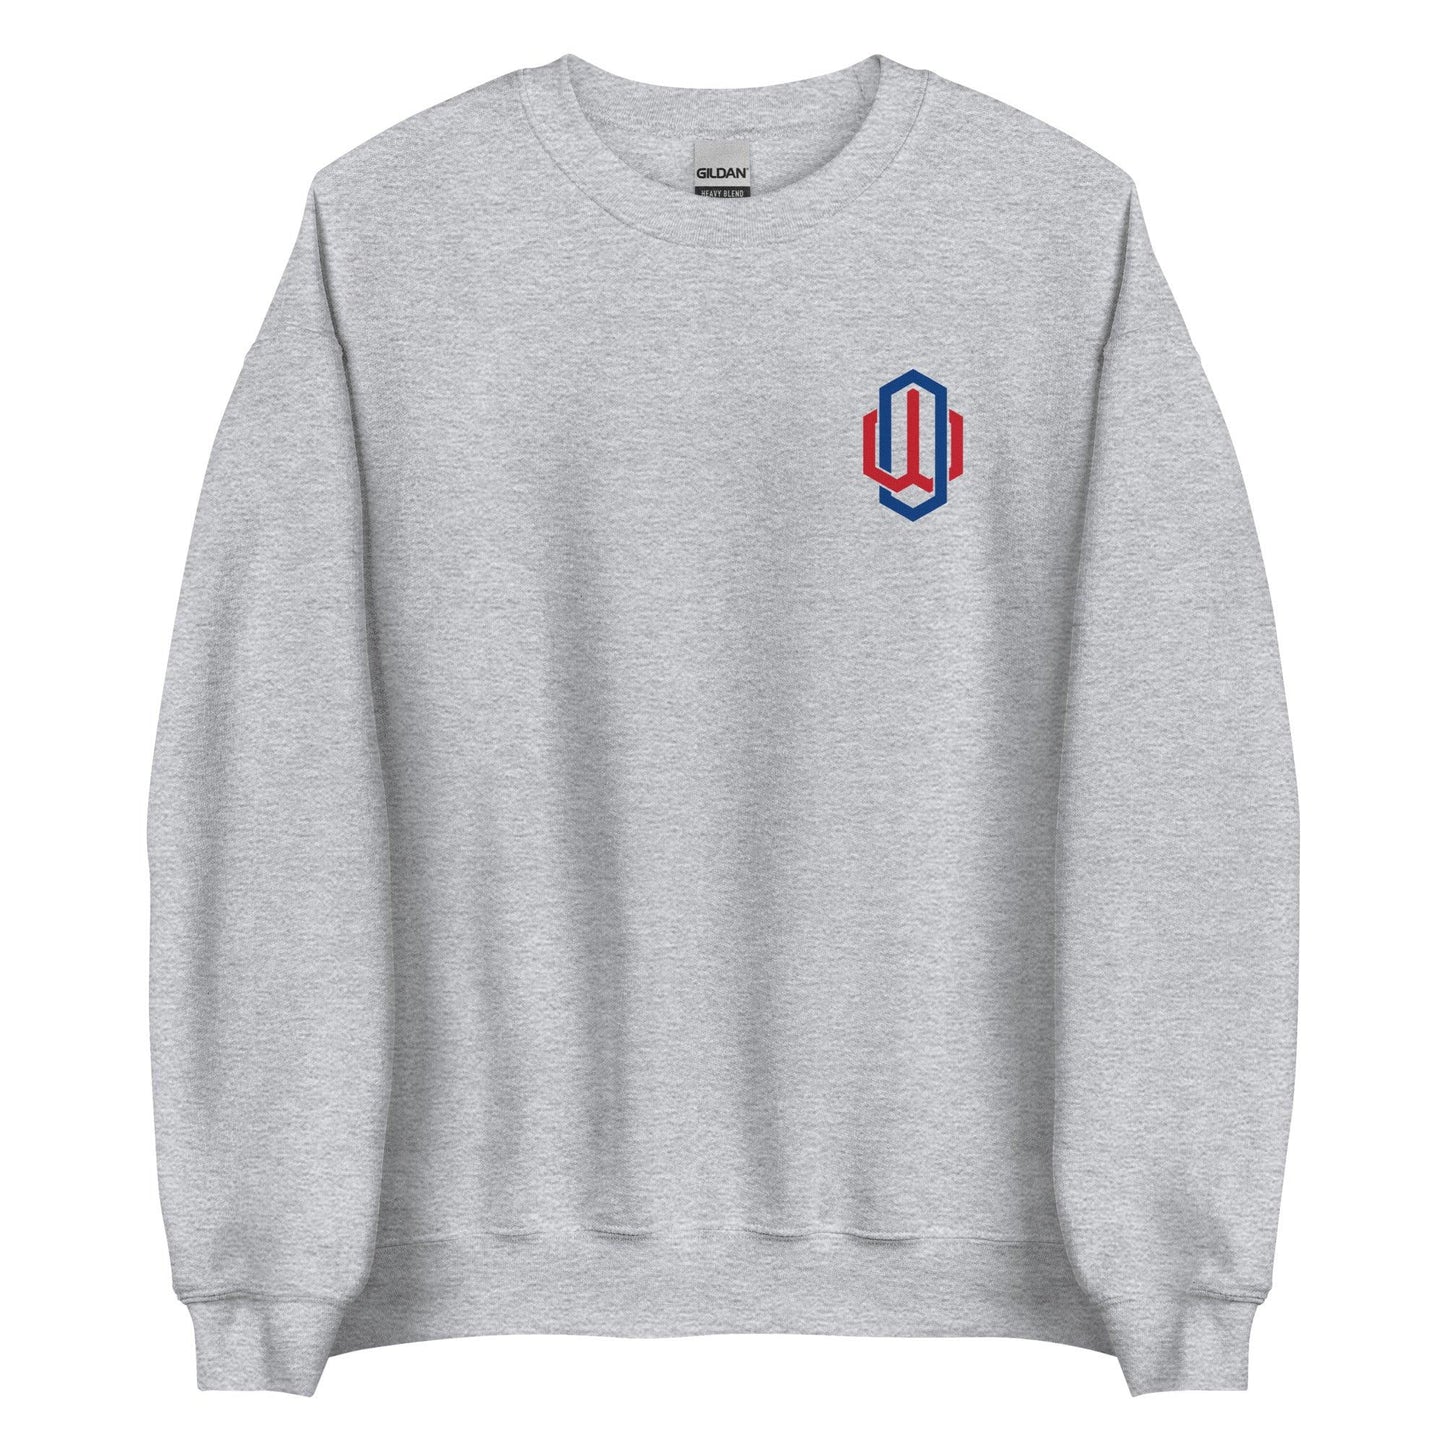 Owen White “OW” Sweatshirt - Fan Arch